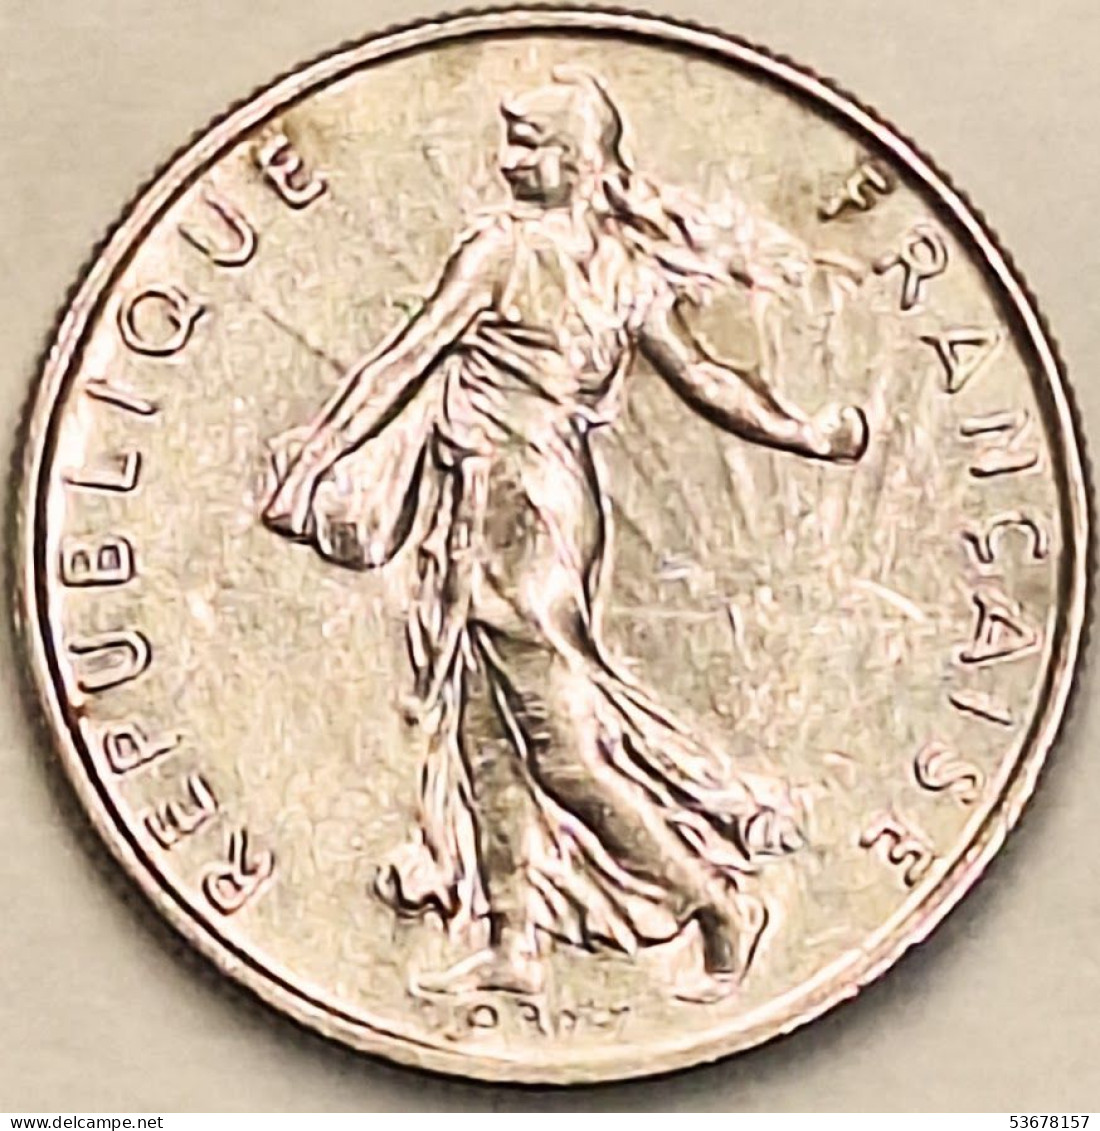 France - 1/2 Franc 1976, KM# 931.1 (#4295) - 1/2 Franc